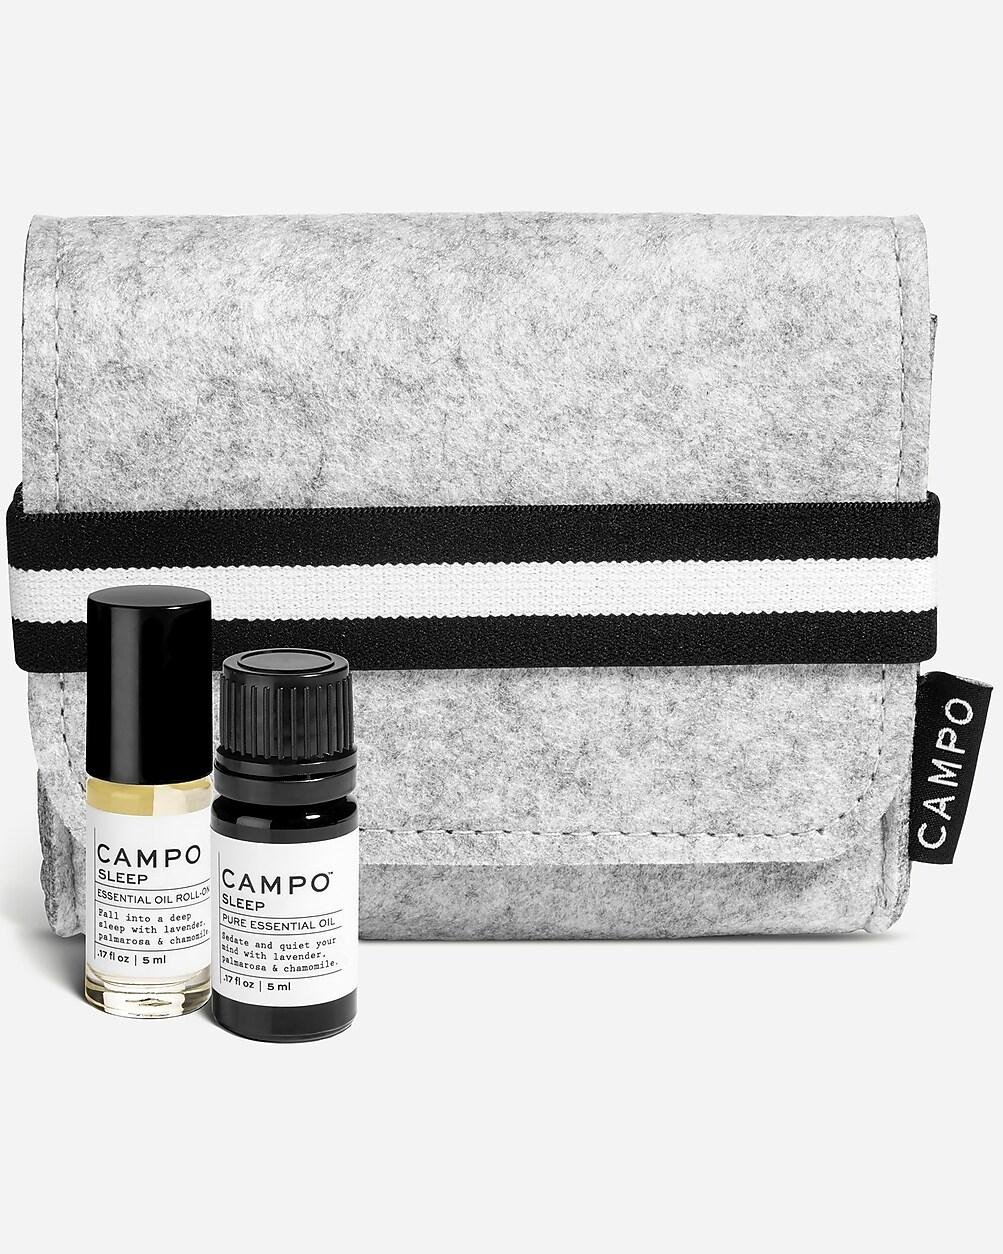 CAMPO® DEEP SLEEP aromatherapy kit by J.CREW